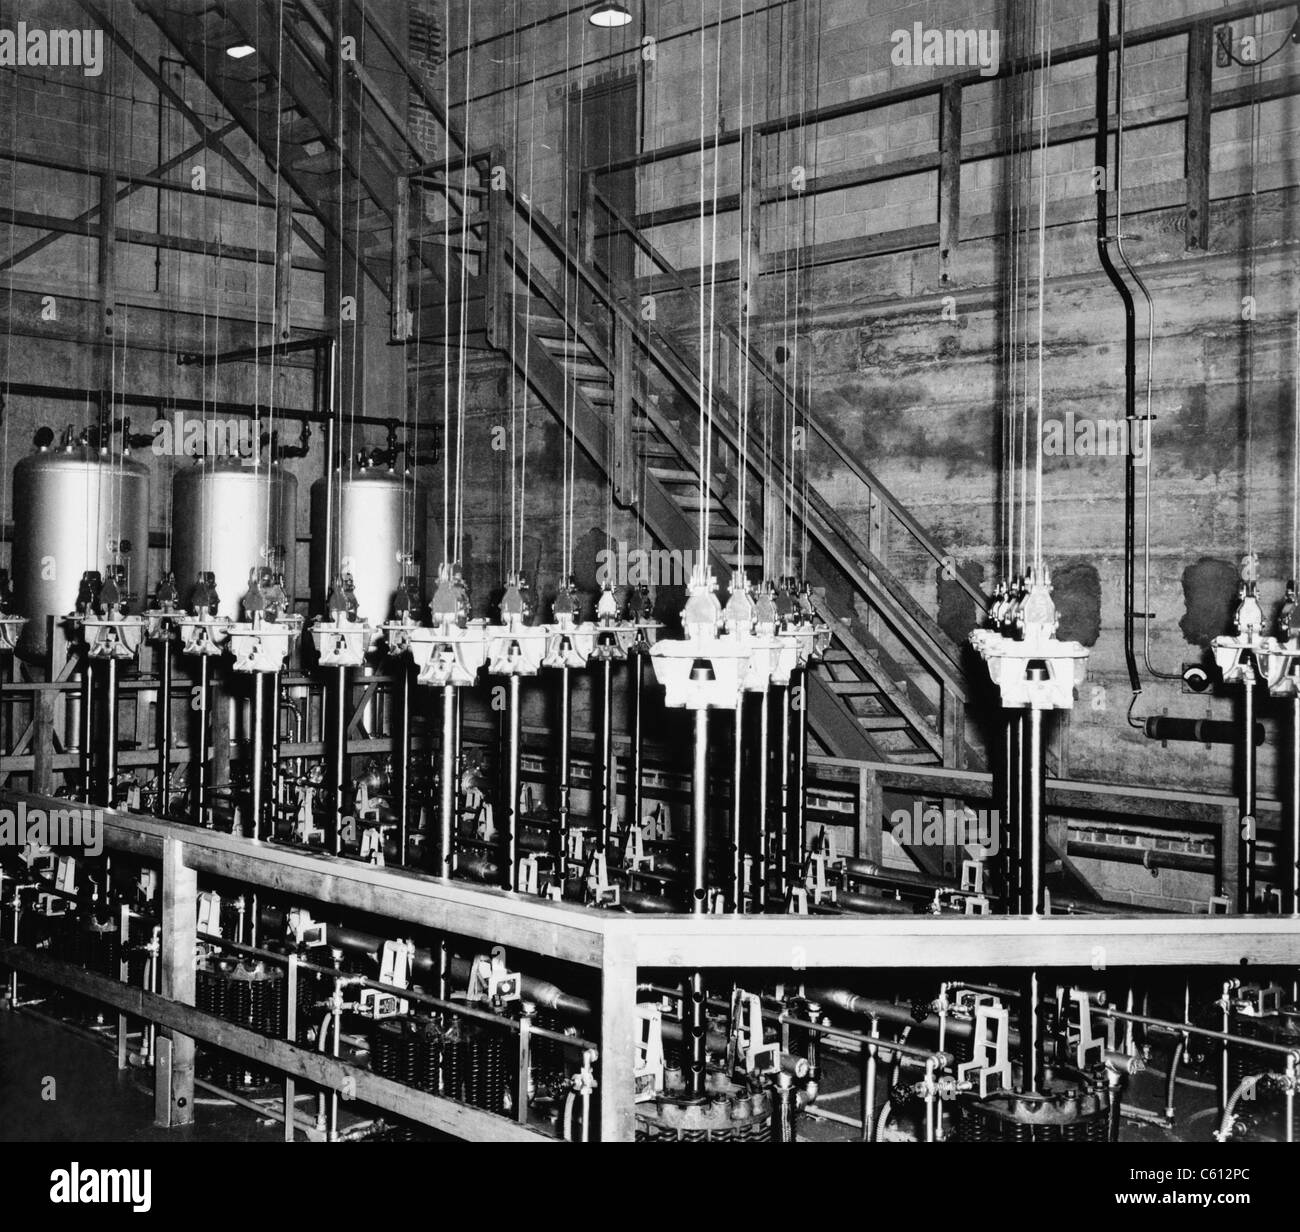 Die vertikale Sicherheit Stäbe und die Kabel, die sie an der Spitze des Haufens Atomic eines Reaktors am Manhattan-Projekt Hanford Standort unterstützen. Die vier versilbert gefärbte Trommeln im Hintergrund enthaltenen Bor Lösung, Teil einer Notabschaltung System die Stäbe durch ein Erdbeben blockiert werden soll. Februar 1945. Stockfoto